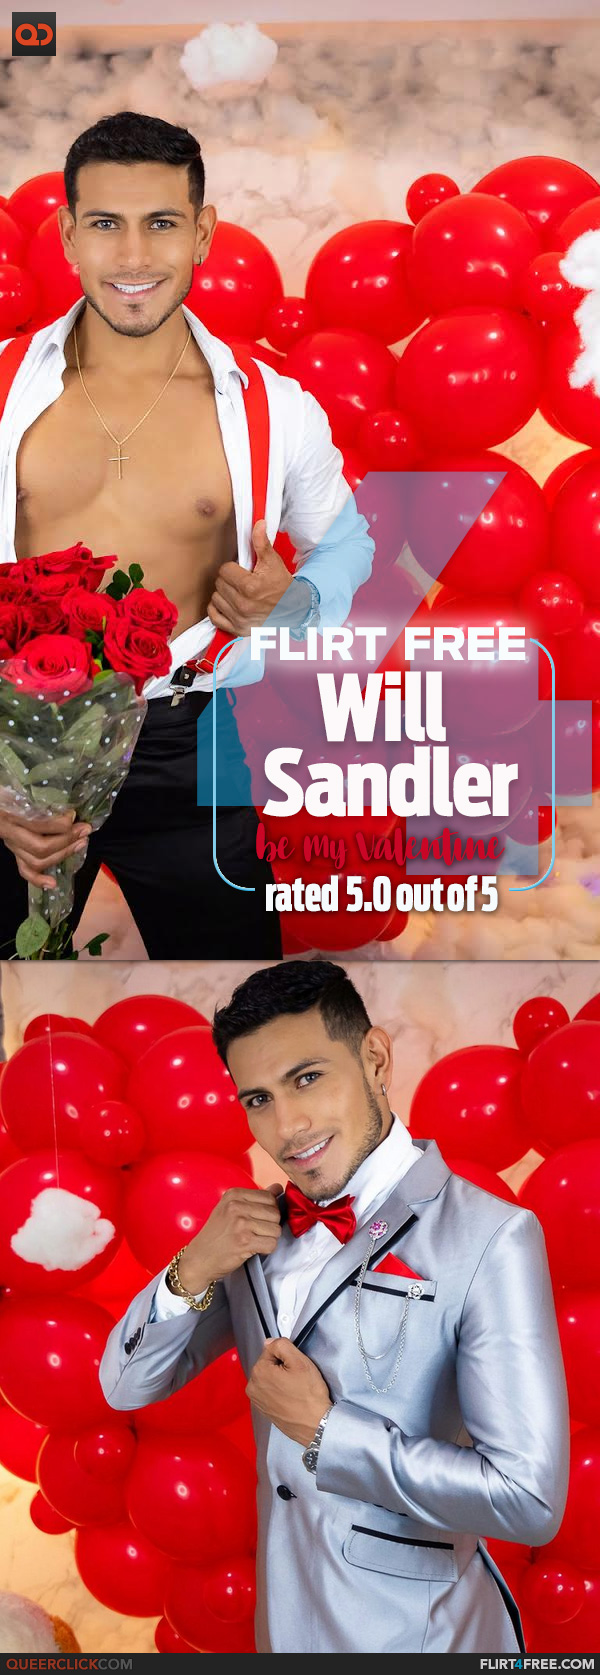 Flirt4Free: Will Sandler